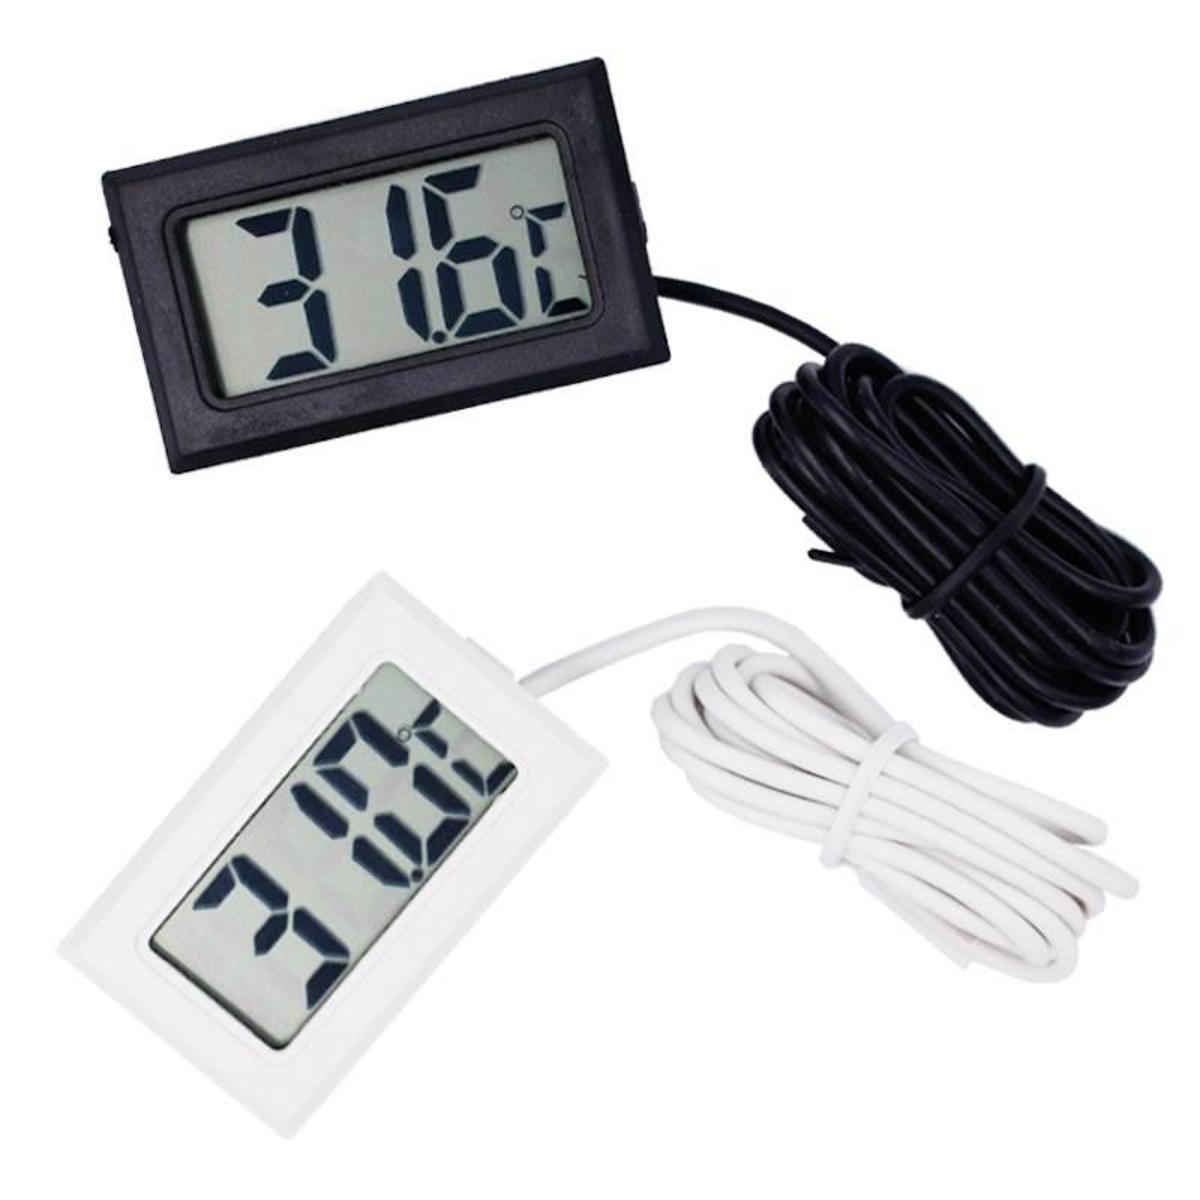 Digital LCD Display Temperature Meter Thermometer Temp Sensor